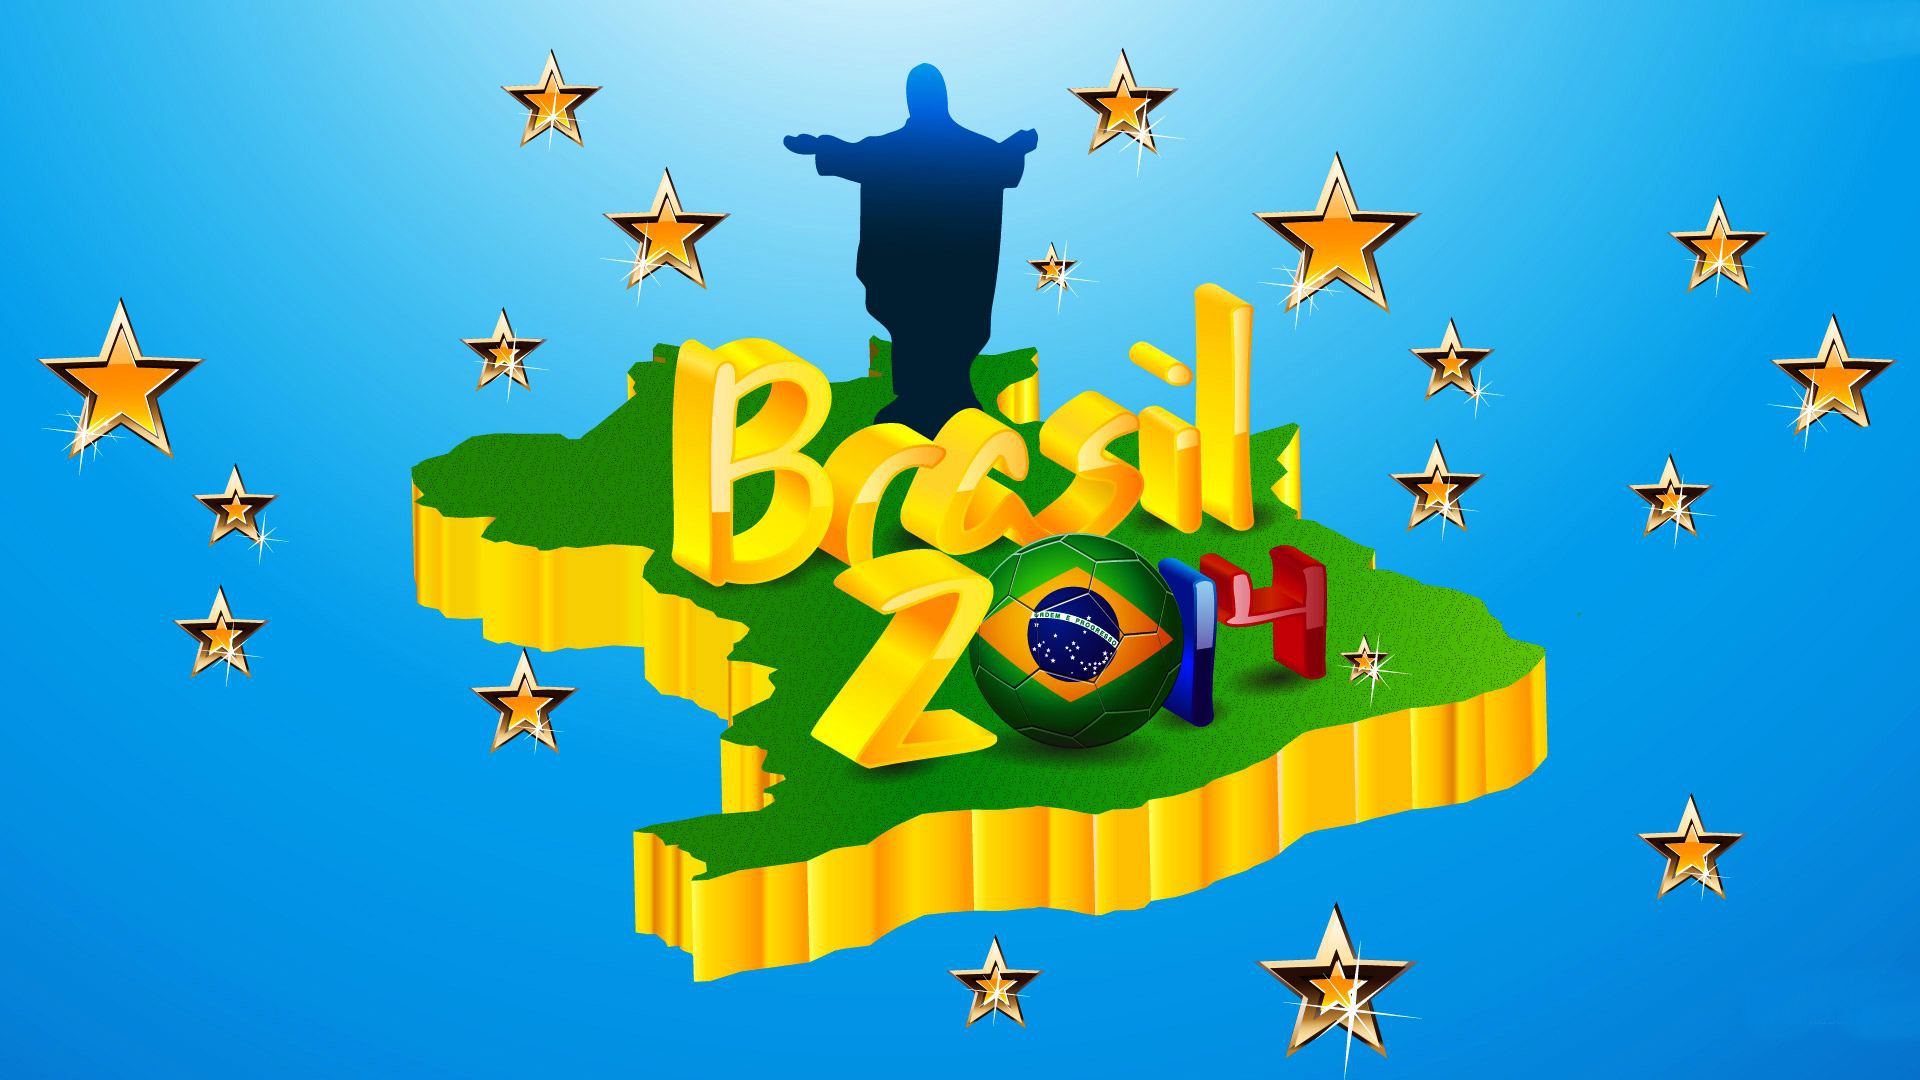 Zastaki.com - Логотип на карте на Чемпионате мира по футболу в Бразилии 2014